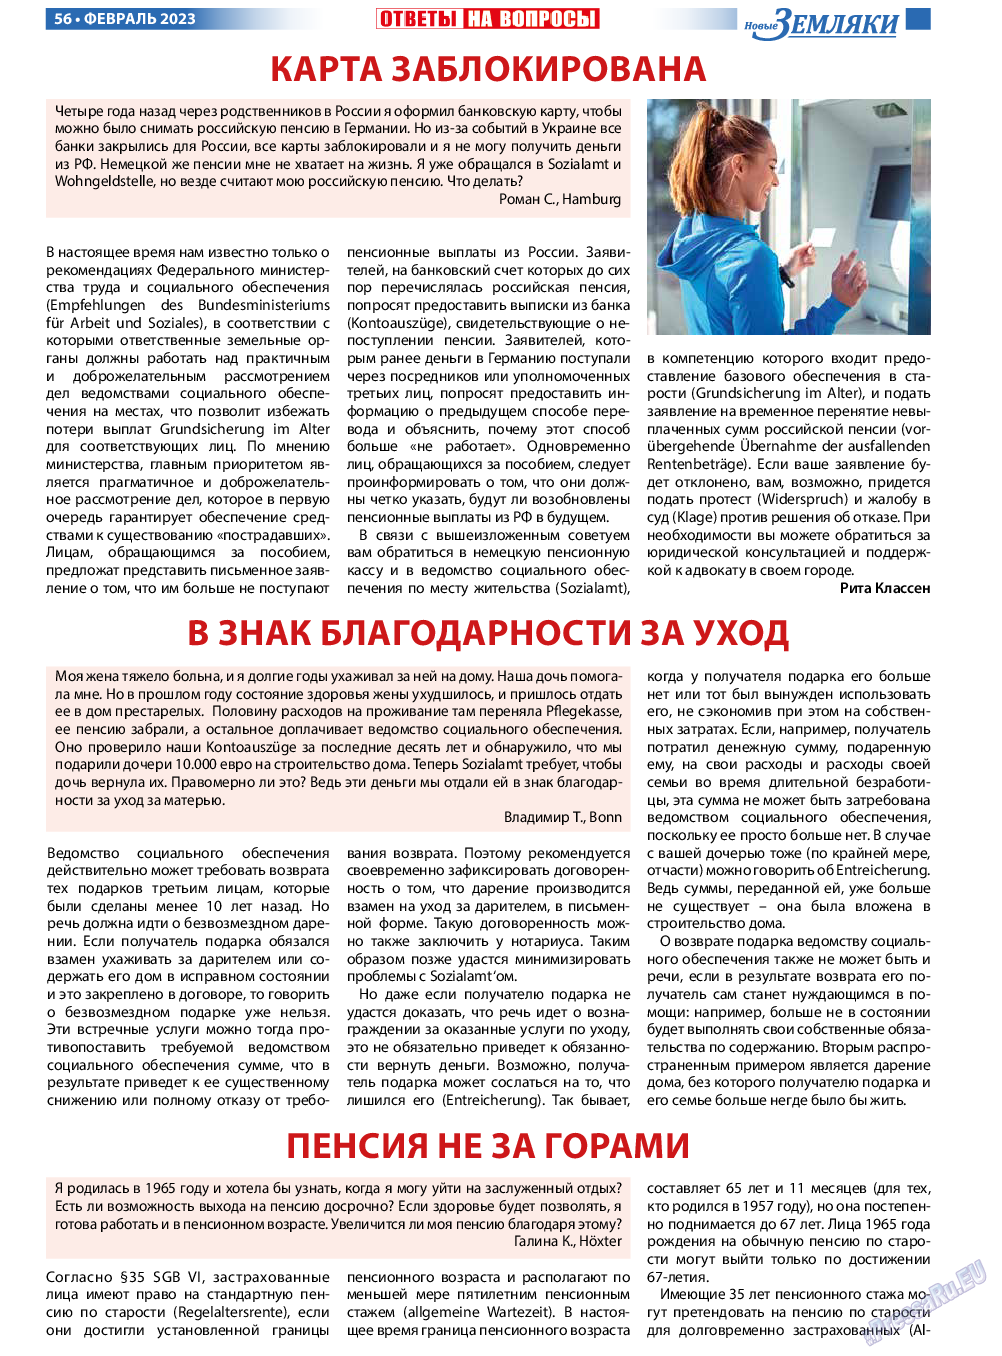 Новые Земляки, газета. 2023 №2 стр.56